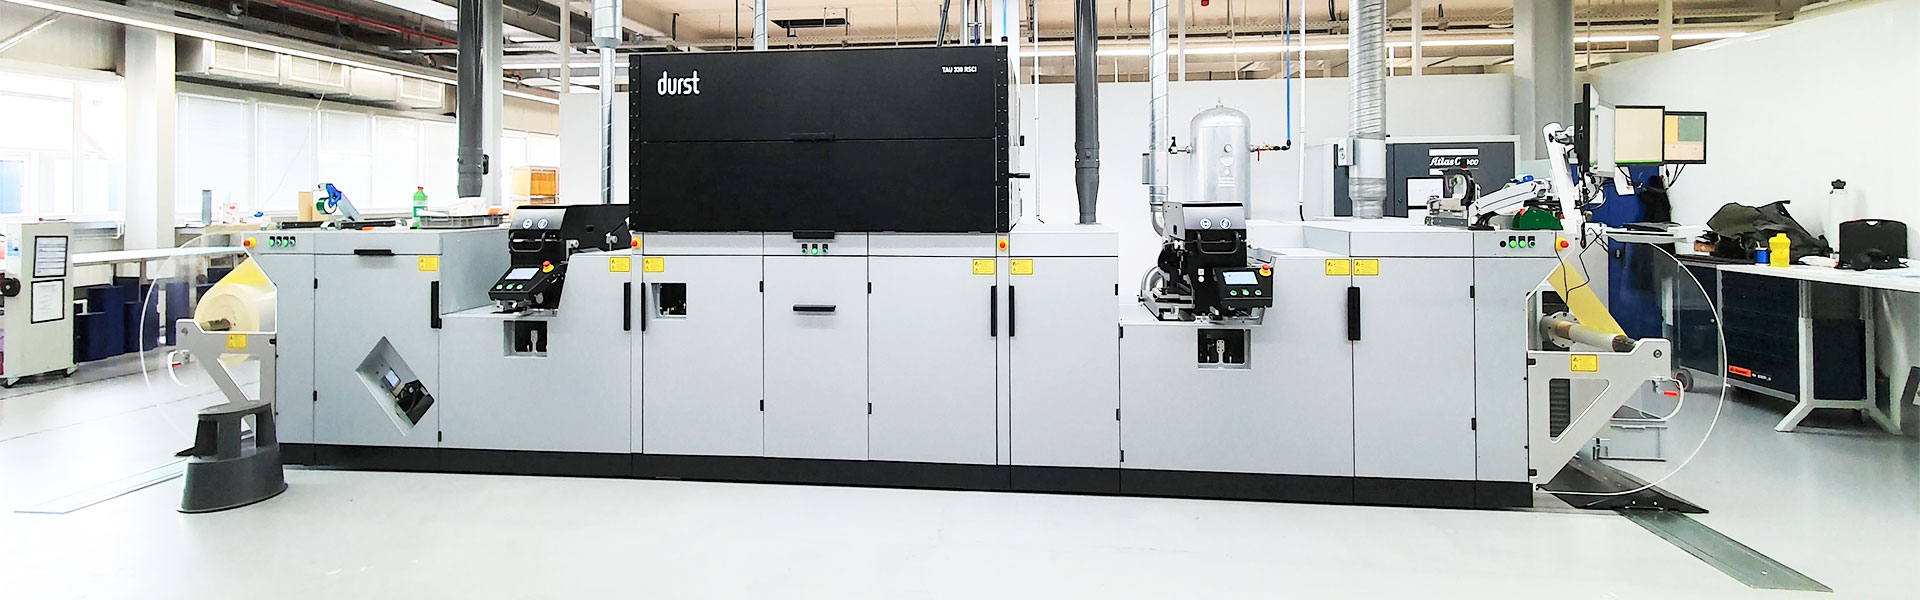 Digitaldruckmaschine Durst Tau 330 RSCi bei Kroschke